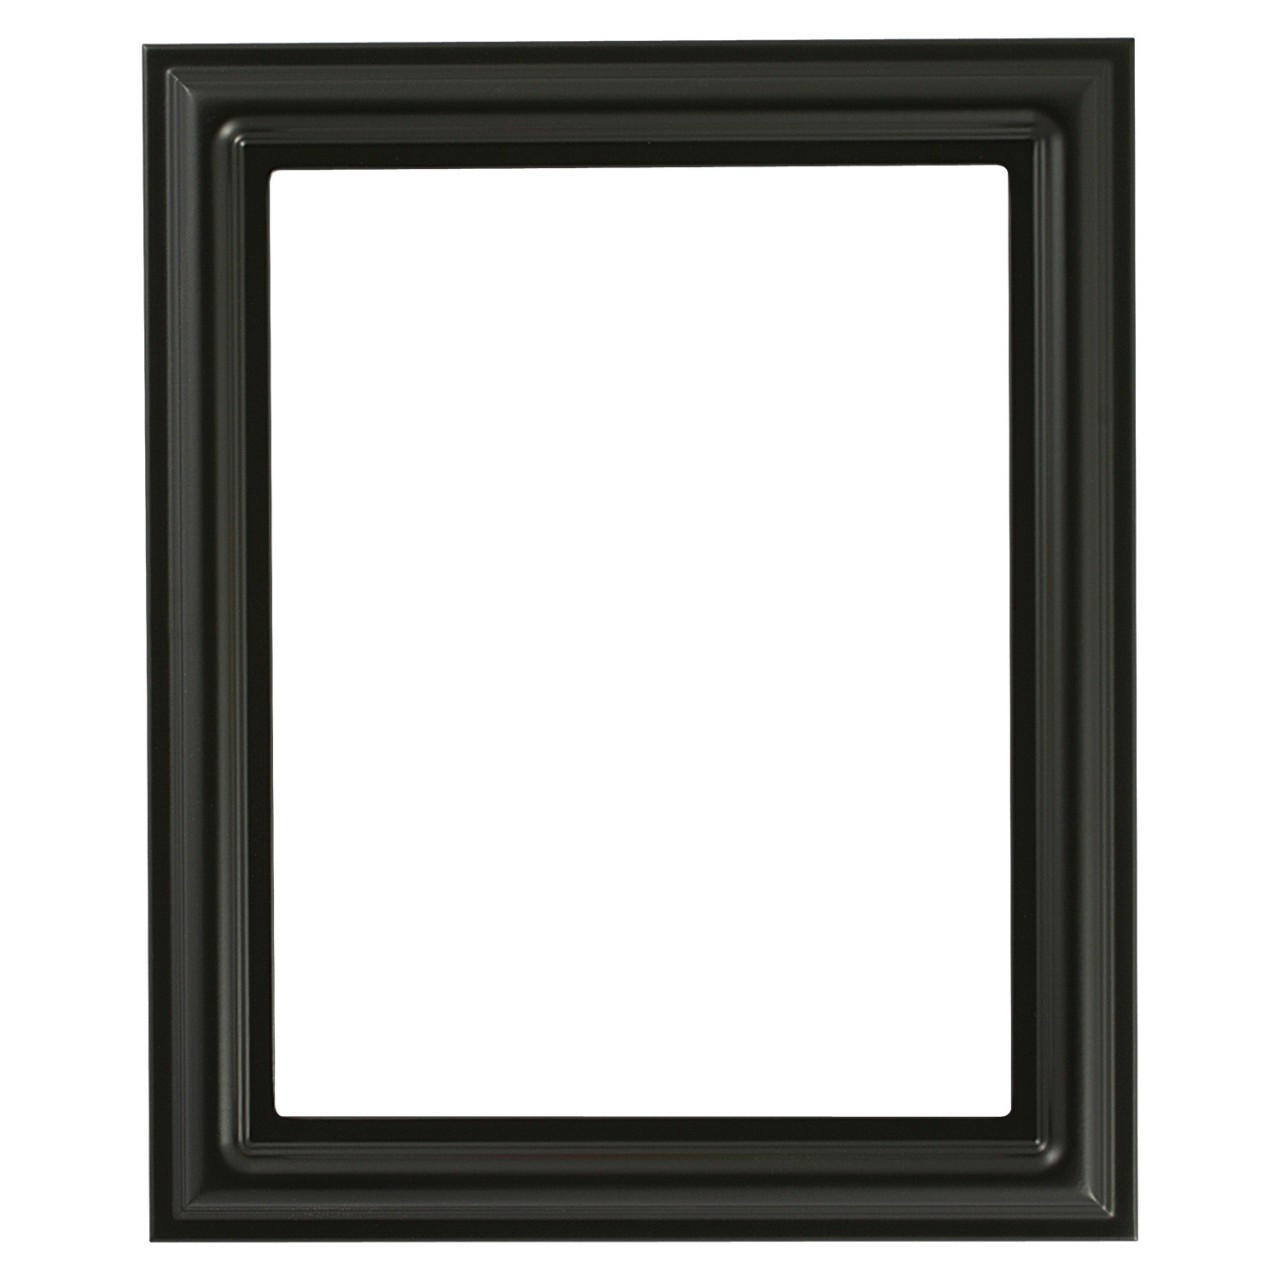 Rectangle Frame in Matte Black Finish Black Picture Frames